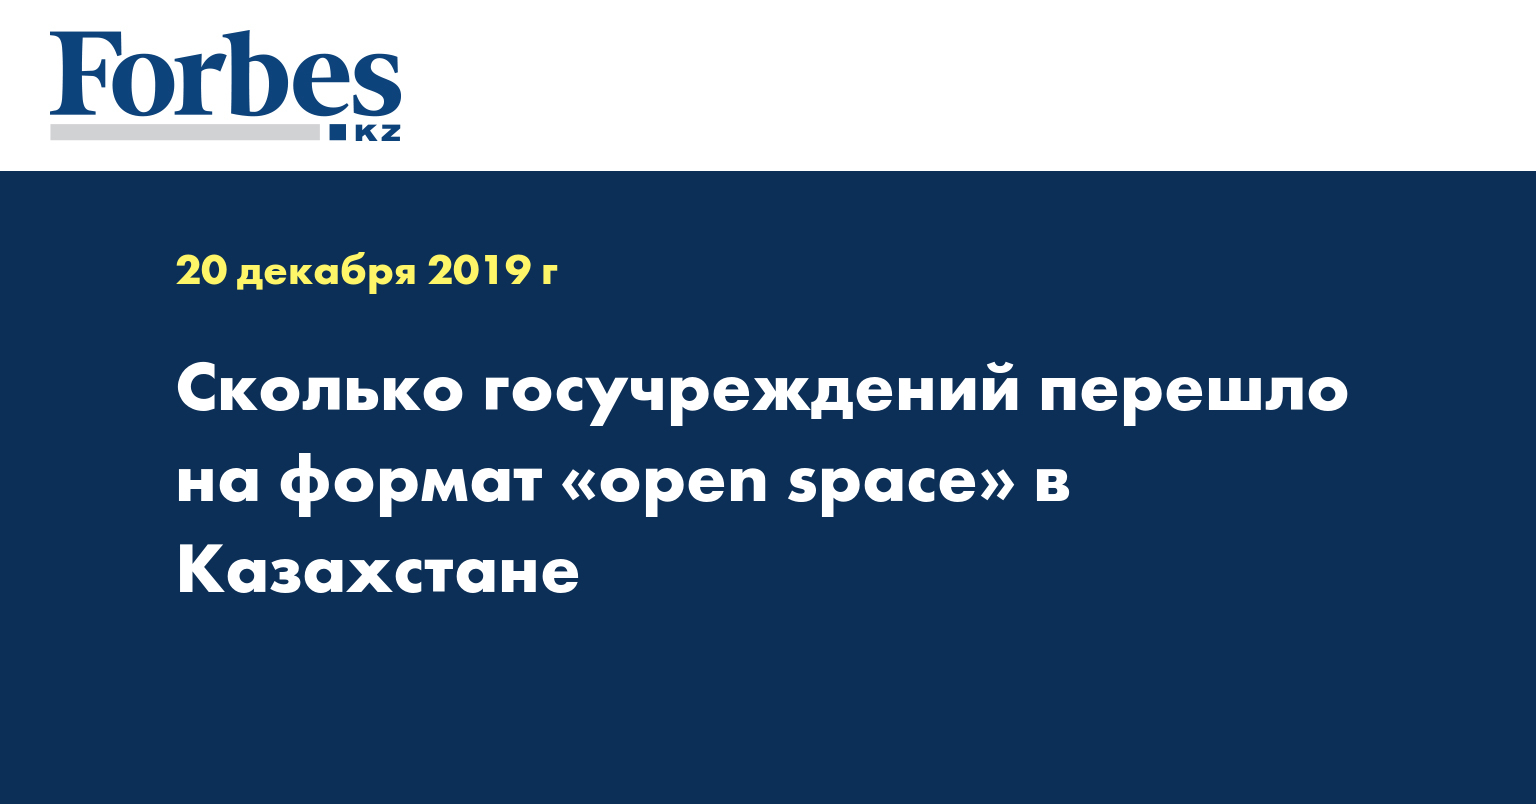 Сколько госучреждений перешло на формат «open space» в Казахстане